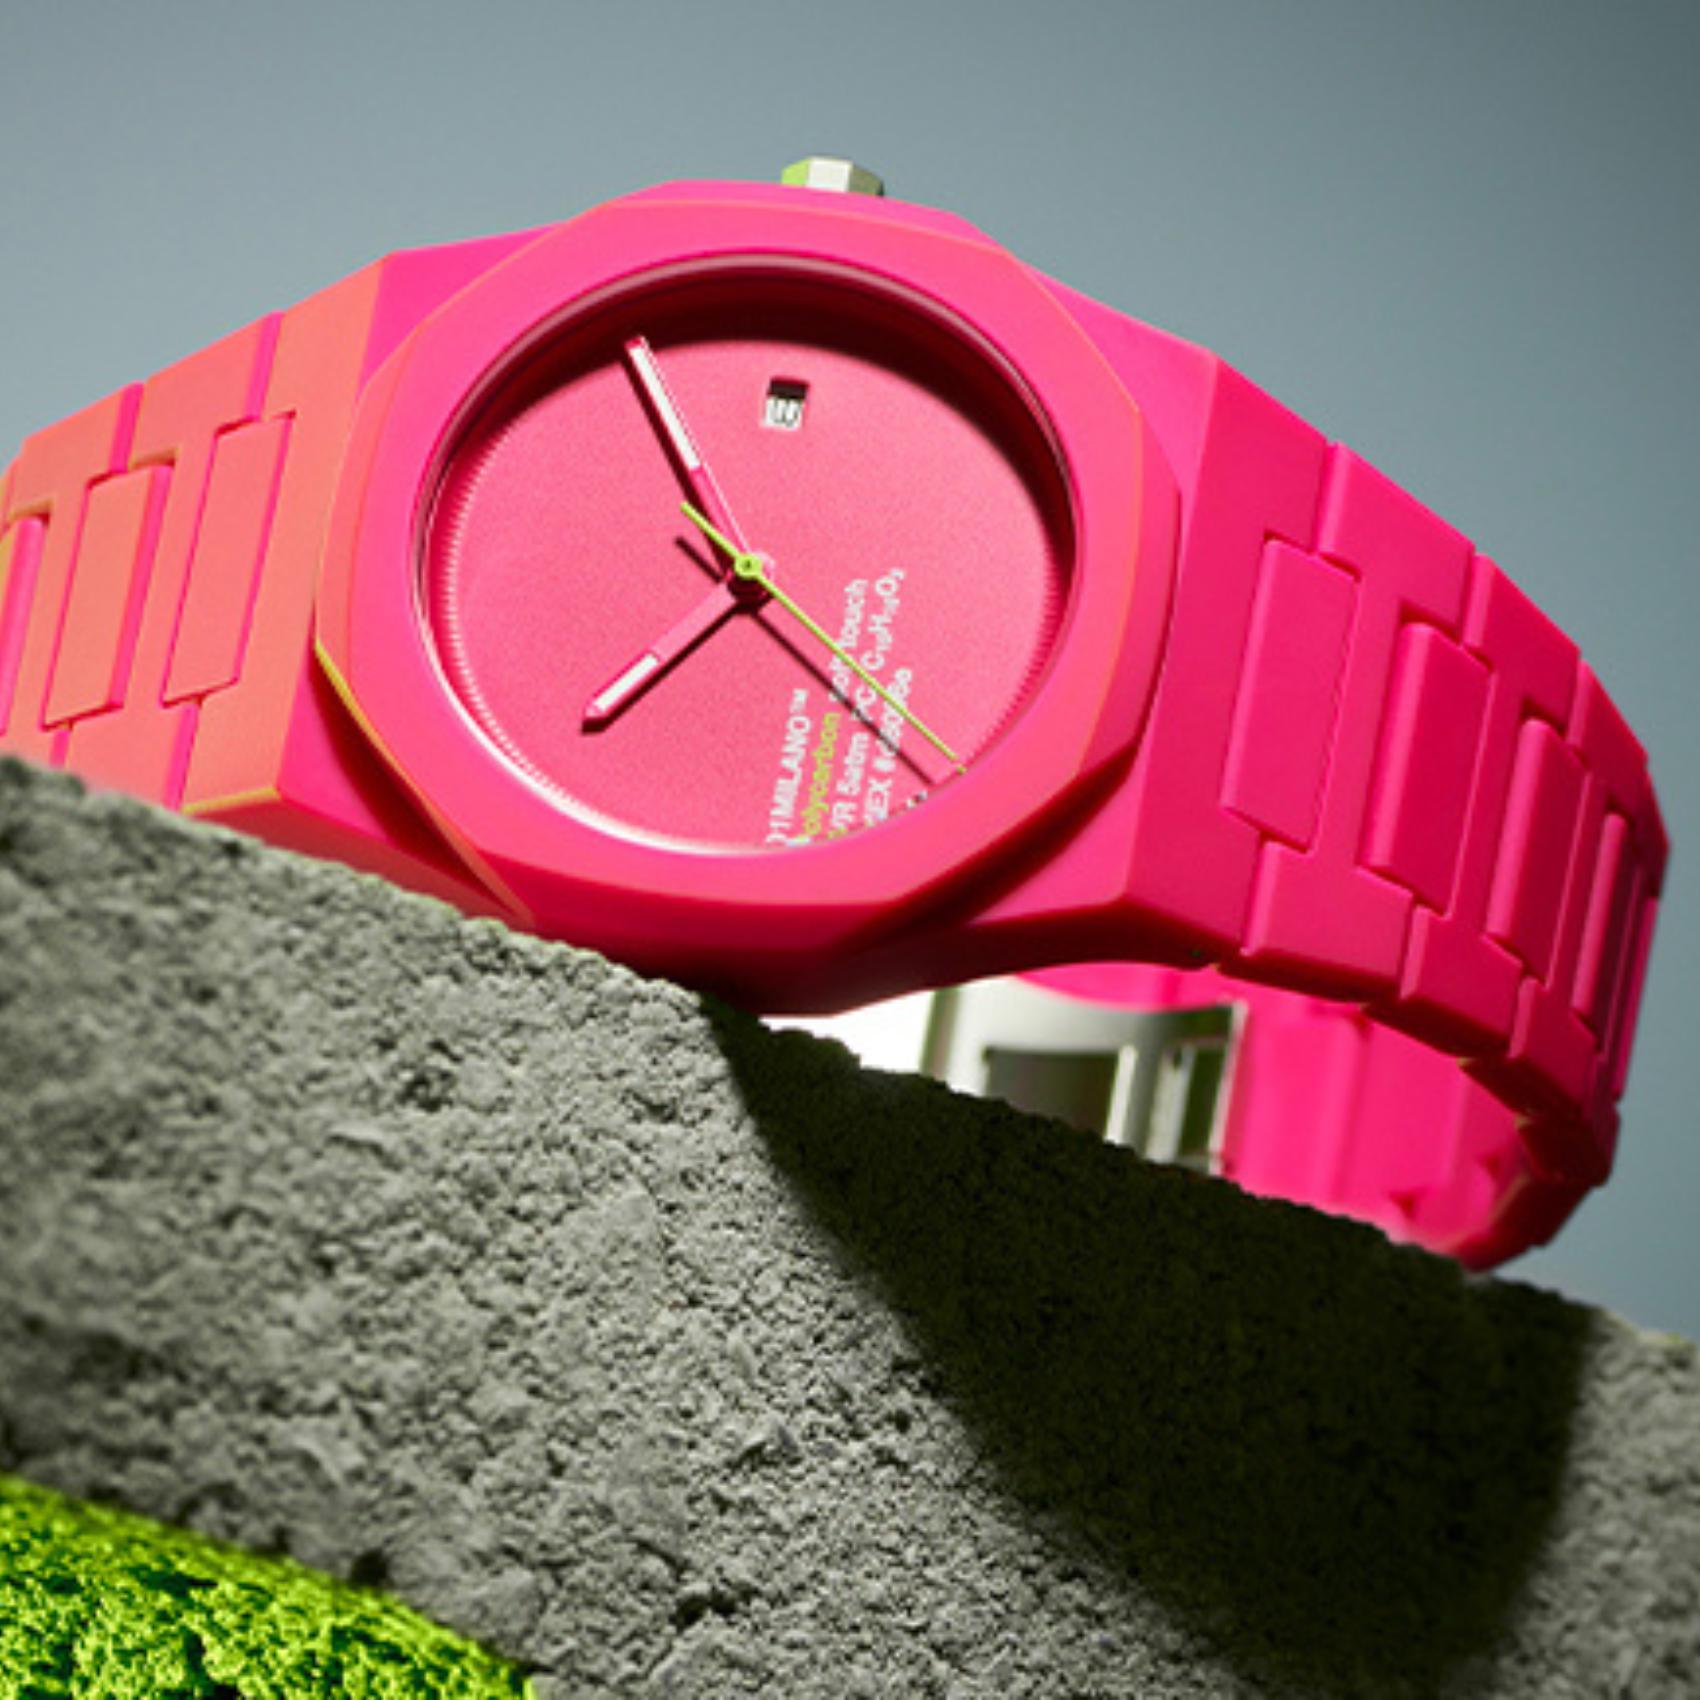 Ρολόι D1 Milano Hot Pink D1-PCBJ32 με ροζ ατσάλινο μπρασελέ και ροζ καντράν 40.5mm με οκτάγωνο σχήμα.